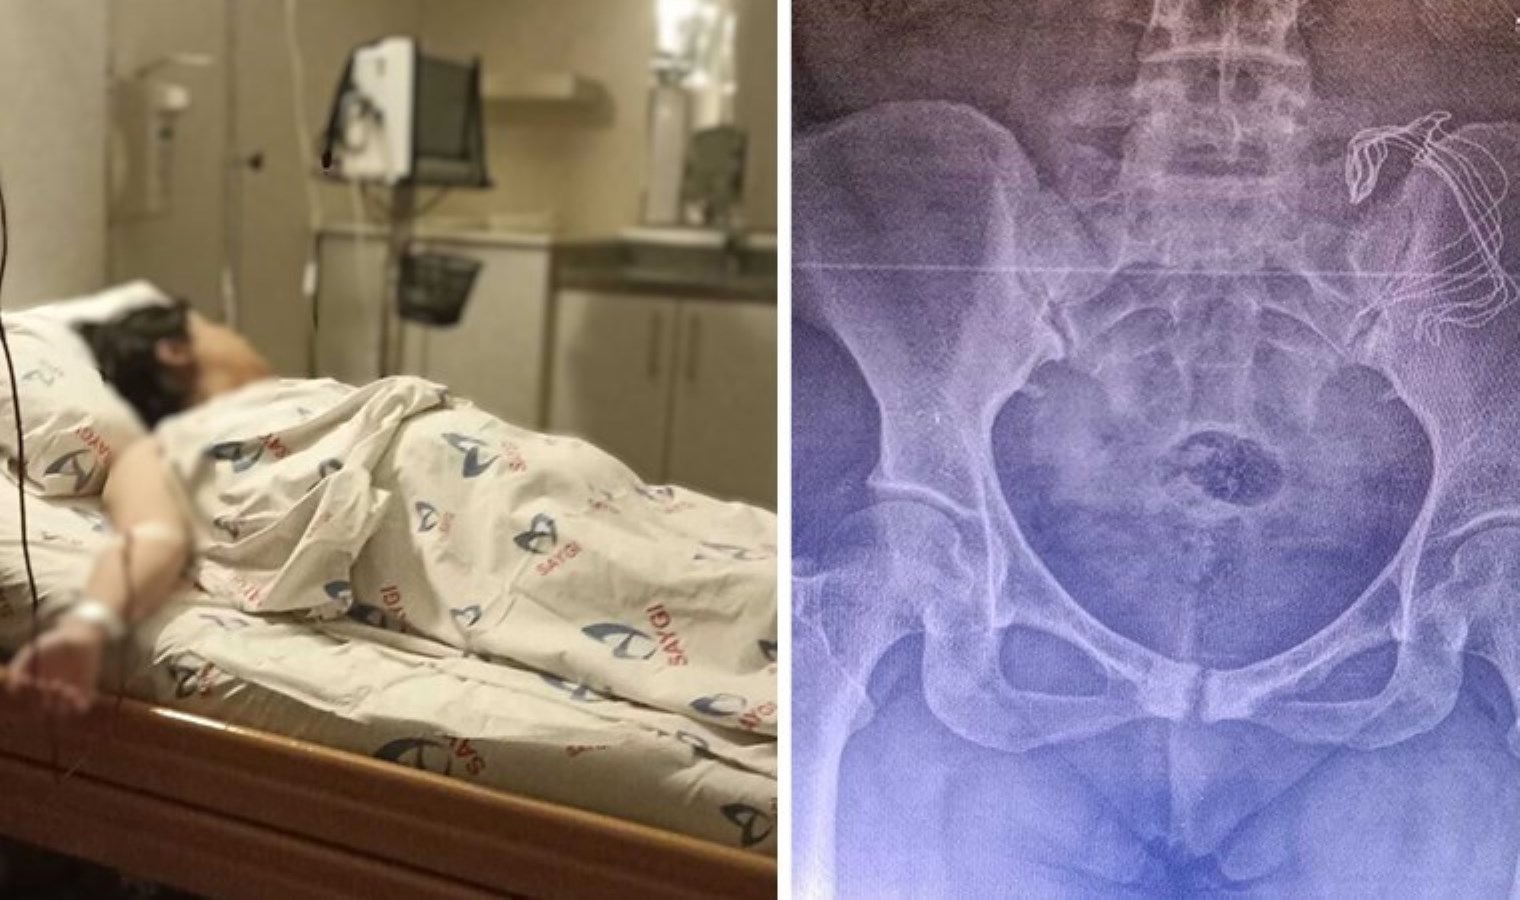 İstanbul’da özel hastanede pes dedirten olay: Doğumda vücudunda unutulan gazlı bez 10 ay sonra fark edildi